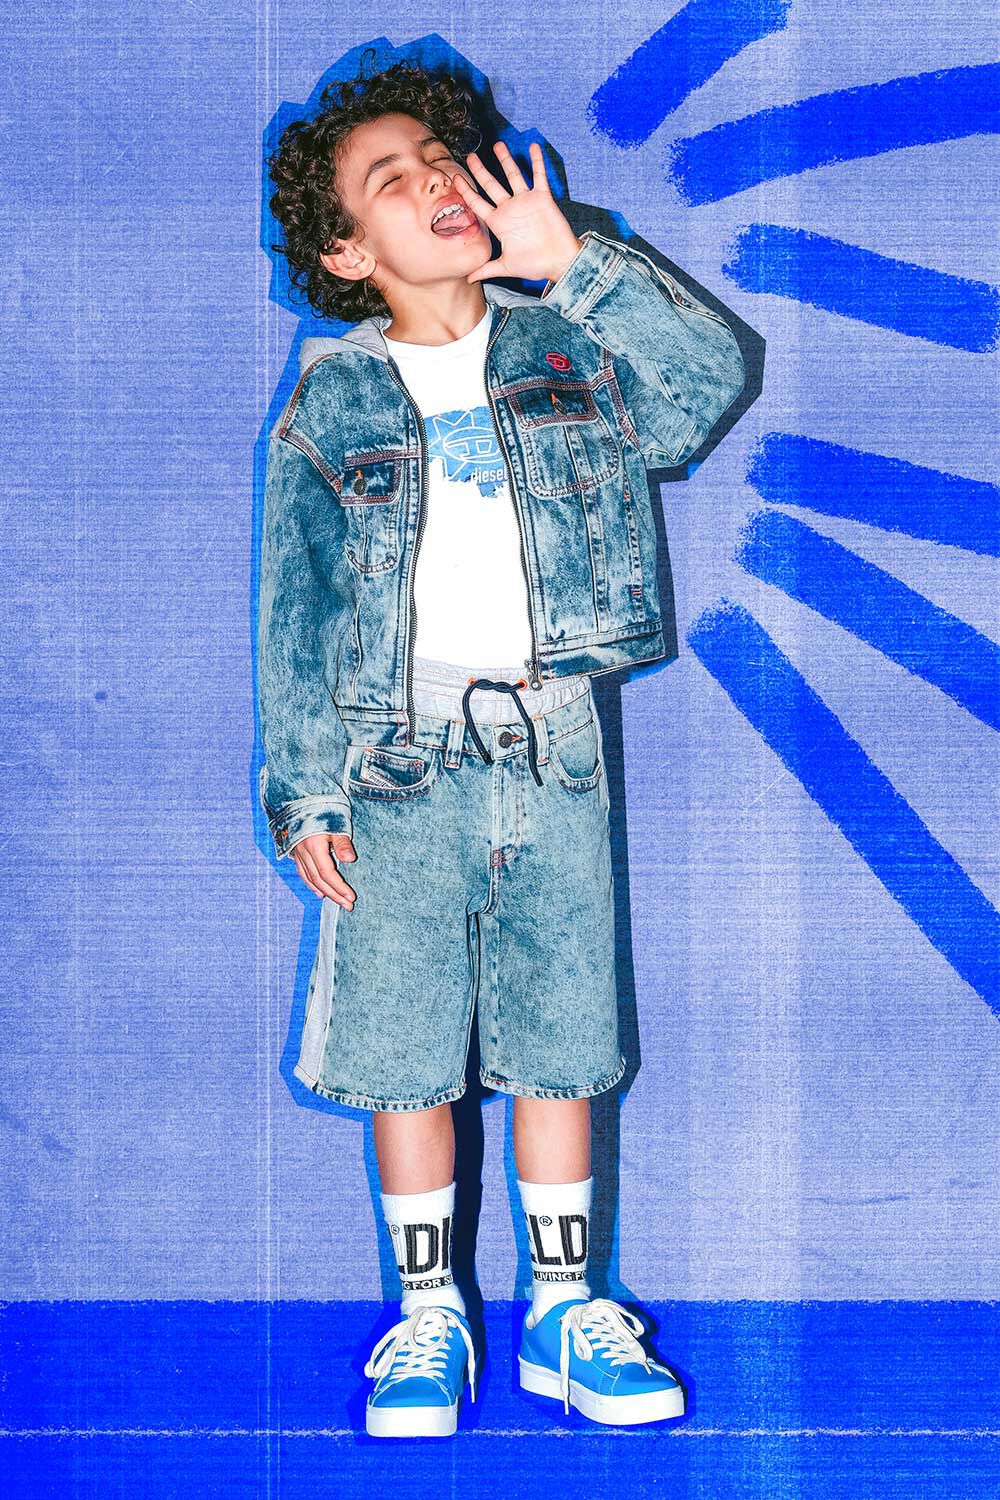 Diesel Kid: Jeans, Clothing, Accessories | Diesel®